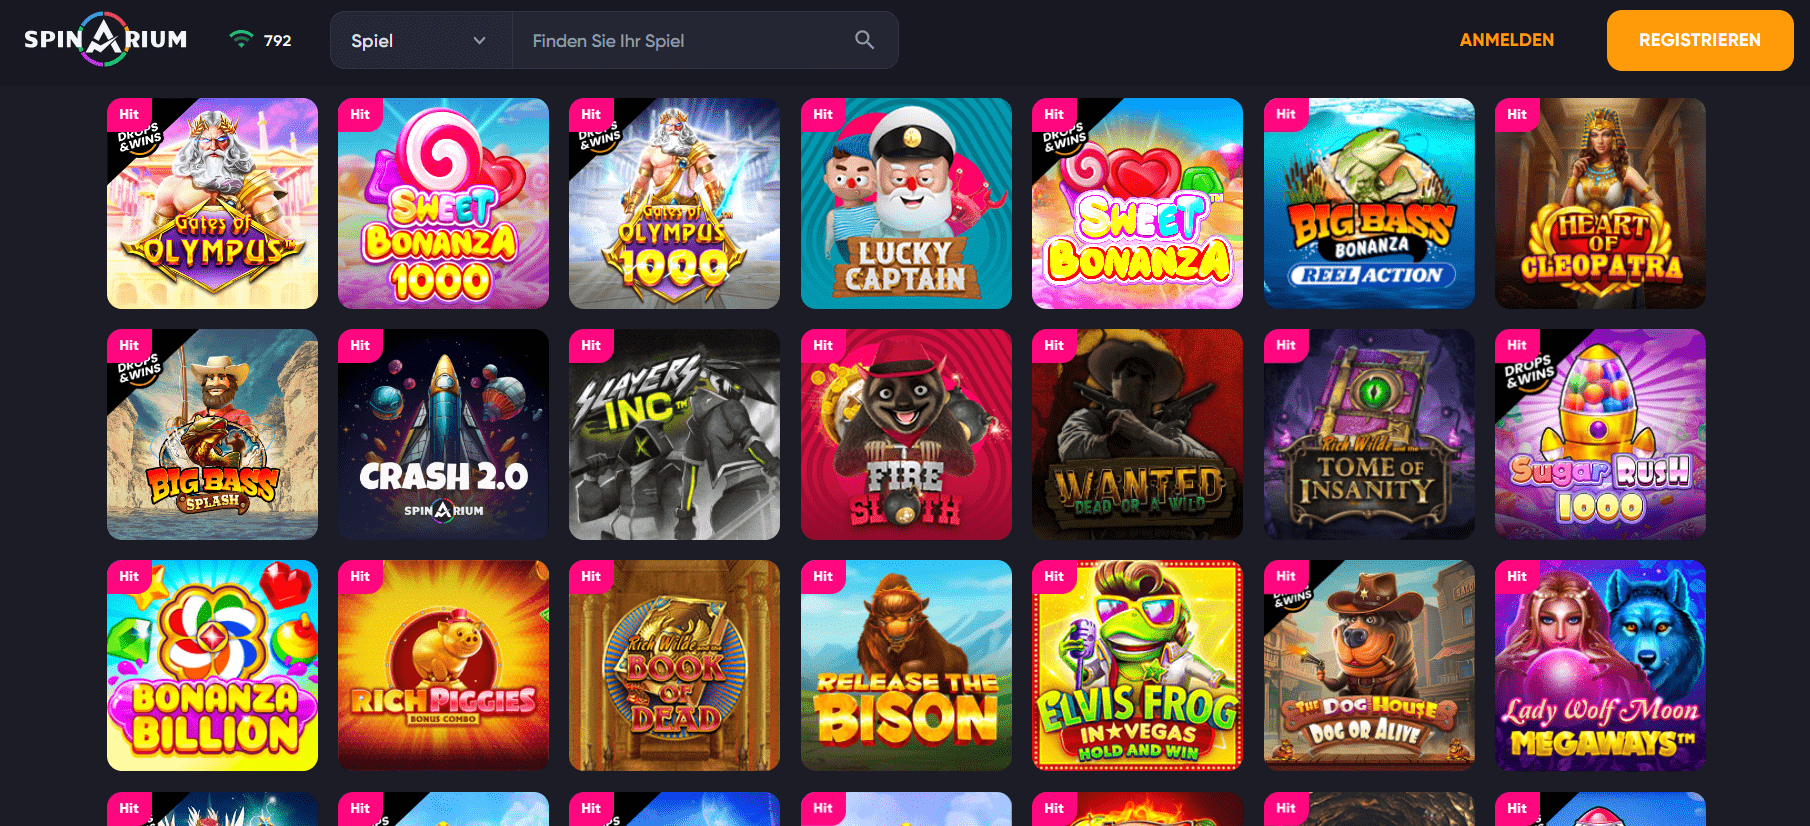 Spinarium Casino Games